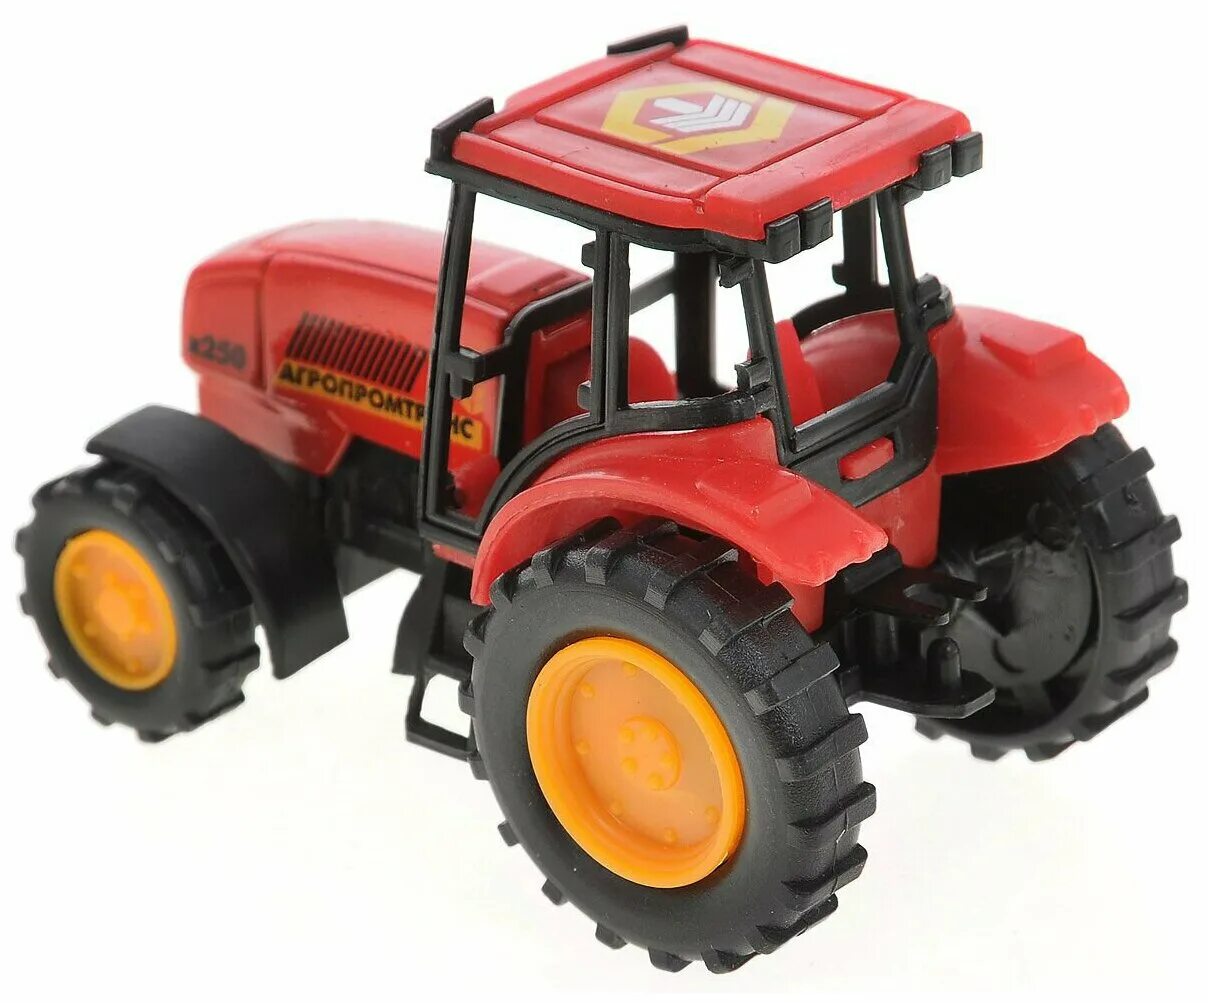 Про красный трактор. Трактор Технопарк Агропромтранс (20119-r) 7 см. Игрушки трактор красный Тайо. Игрушка трактор tractor красный. Игрушечные модели тракторов.